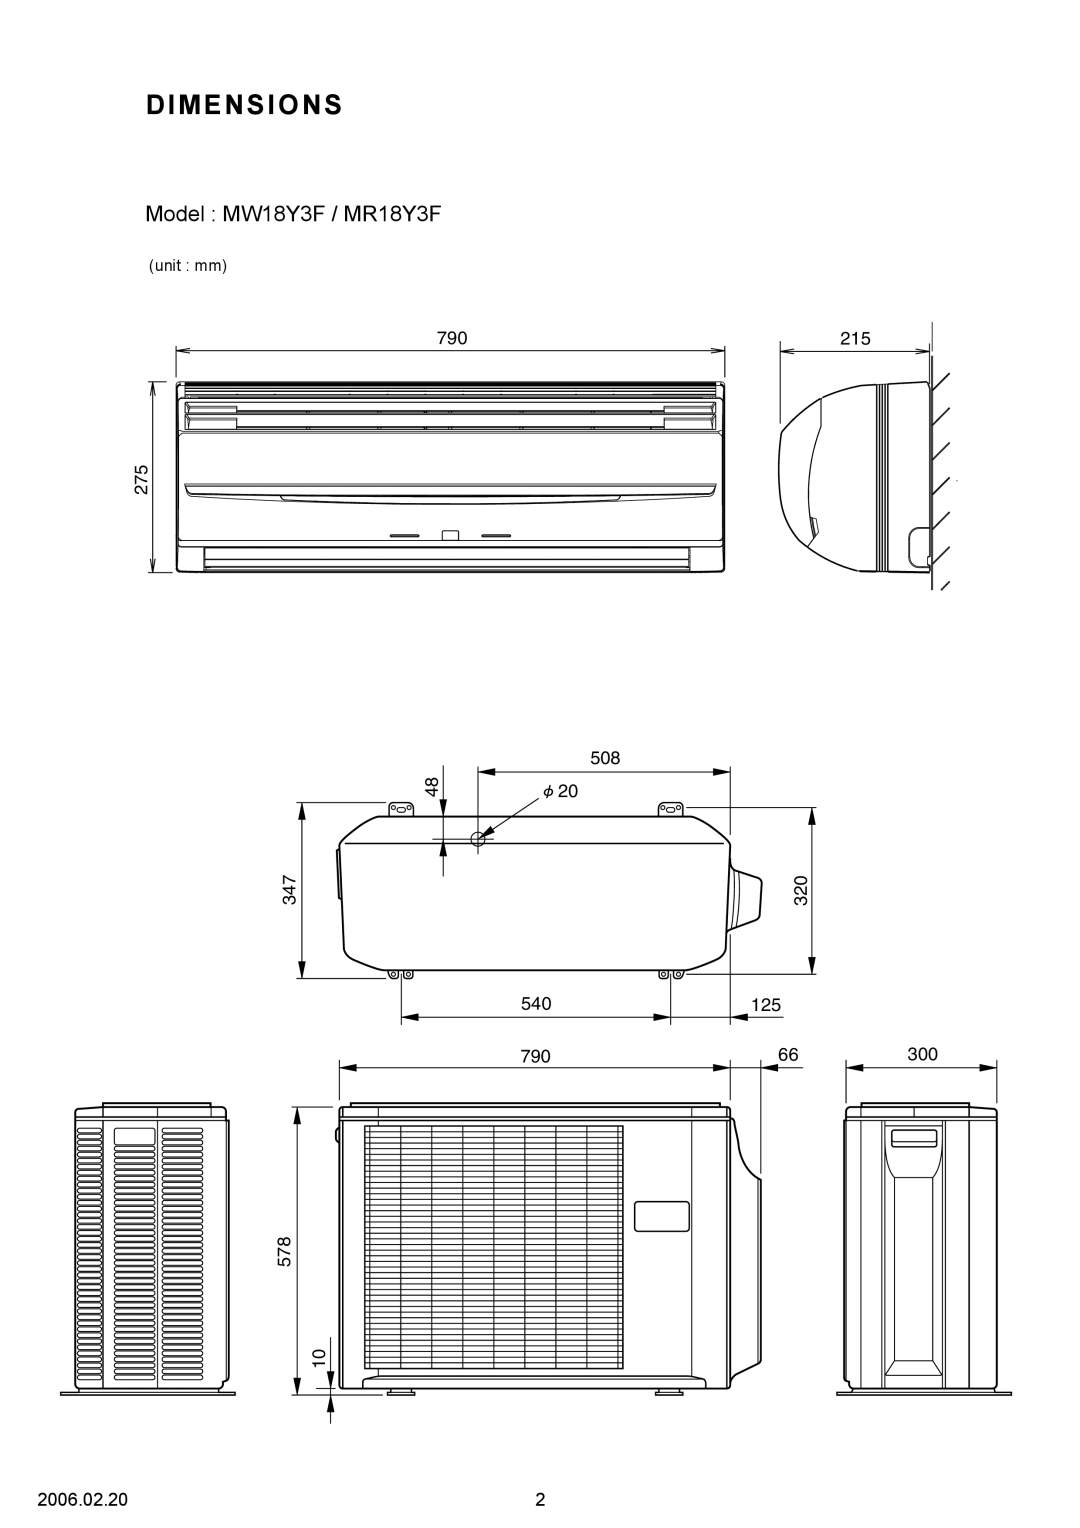 Friedrich specifications Dimensions, Model MW18Y3F / MR18Y3F, 275, unit mm 